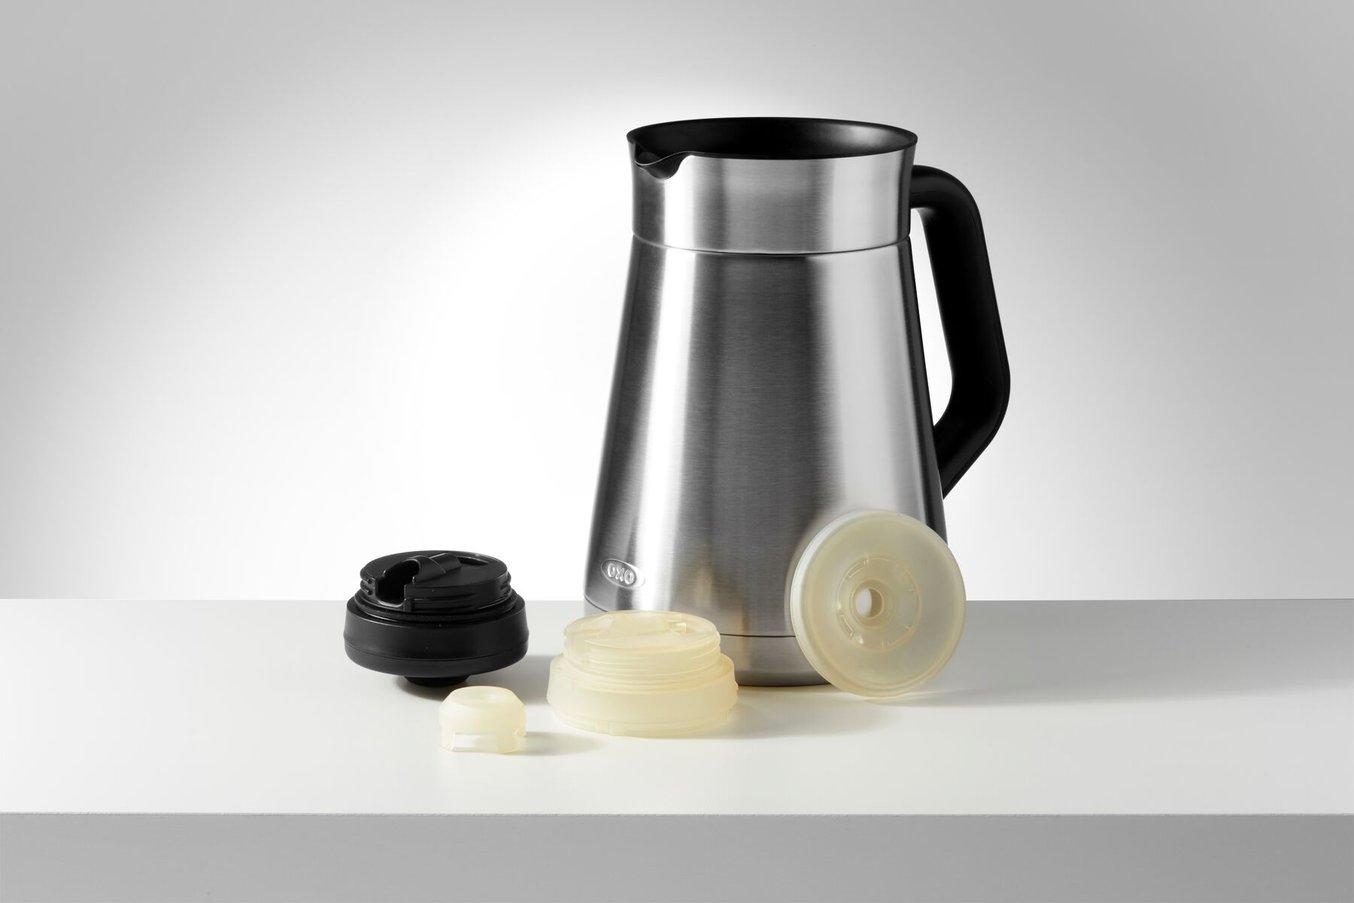 Cafetera y tapa de cafetera de OXO, con prototipos impresos en 3D de la tapa